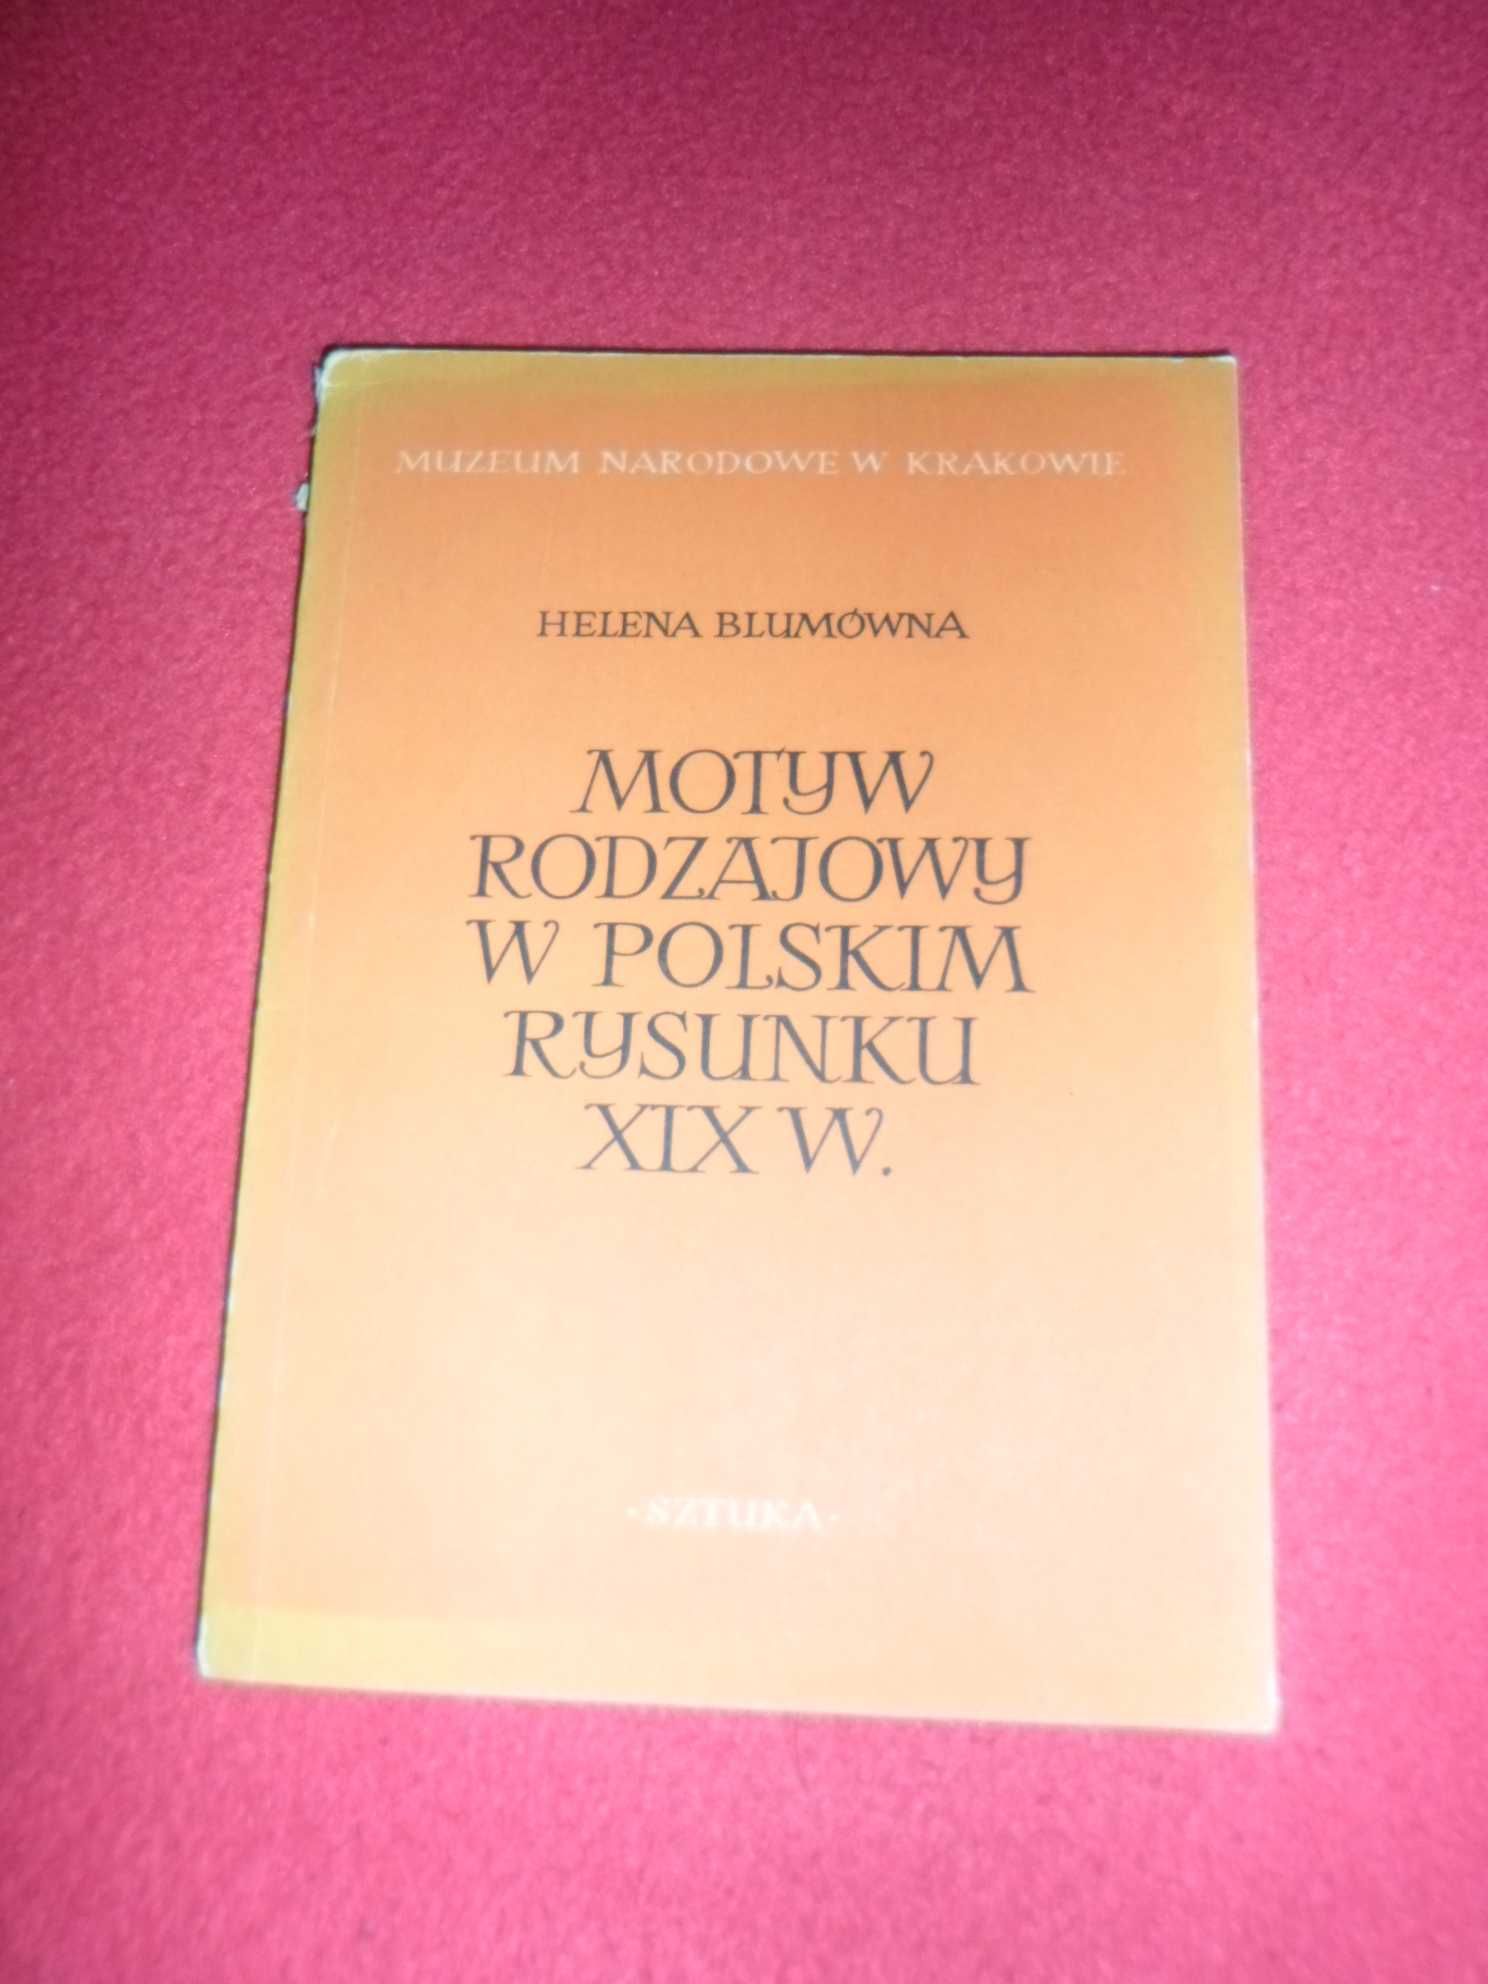 Helena Blumówna - Motyw Rodzajowy W Polskim Rysunku XIX w.